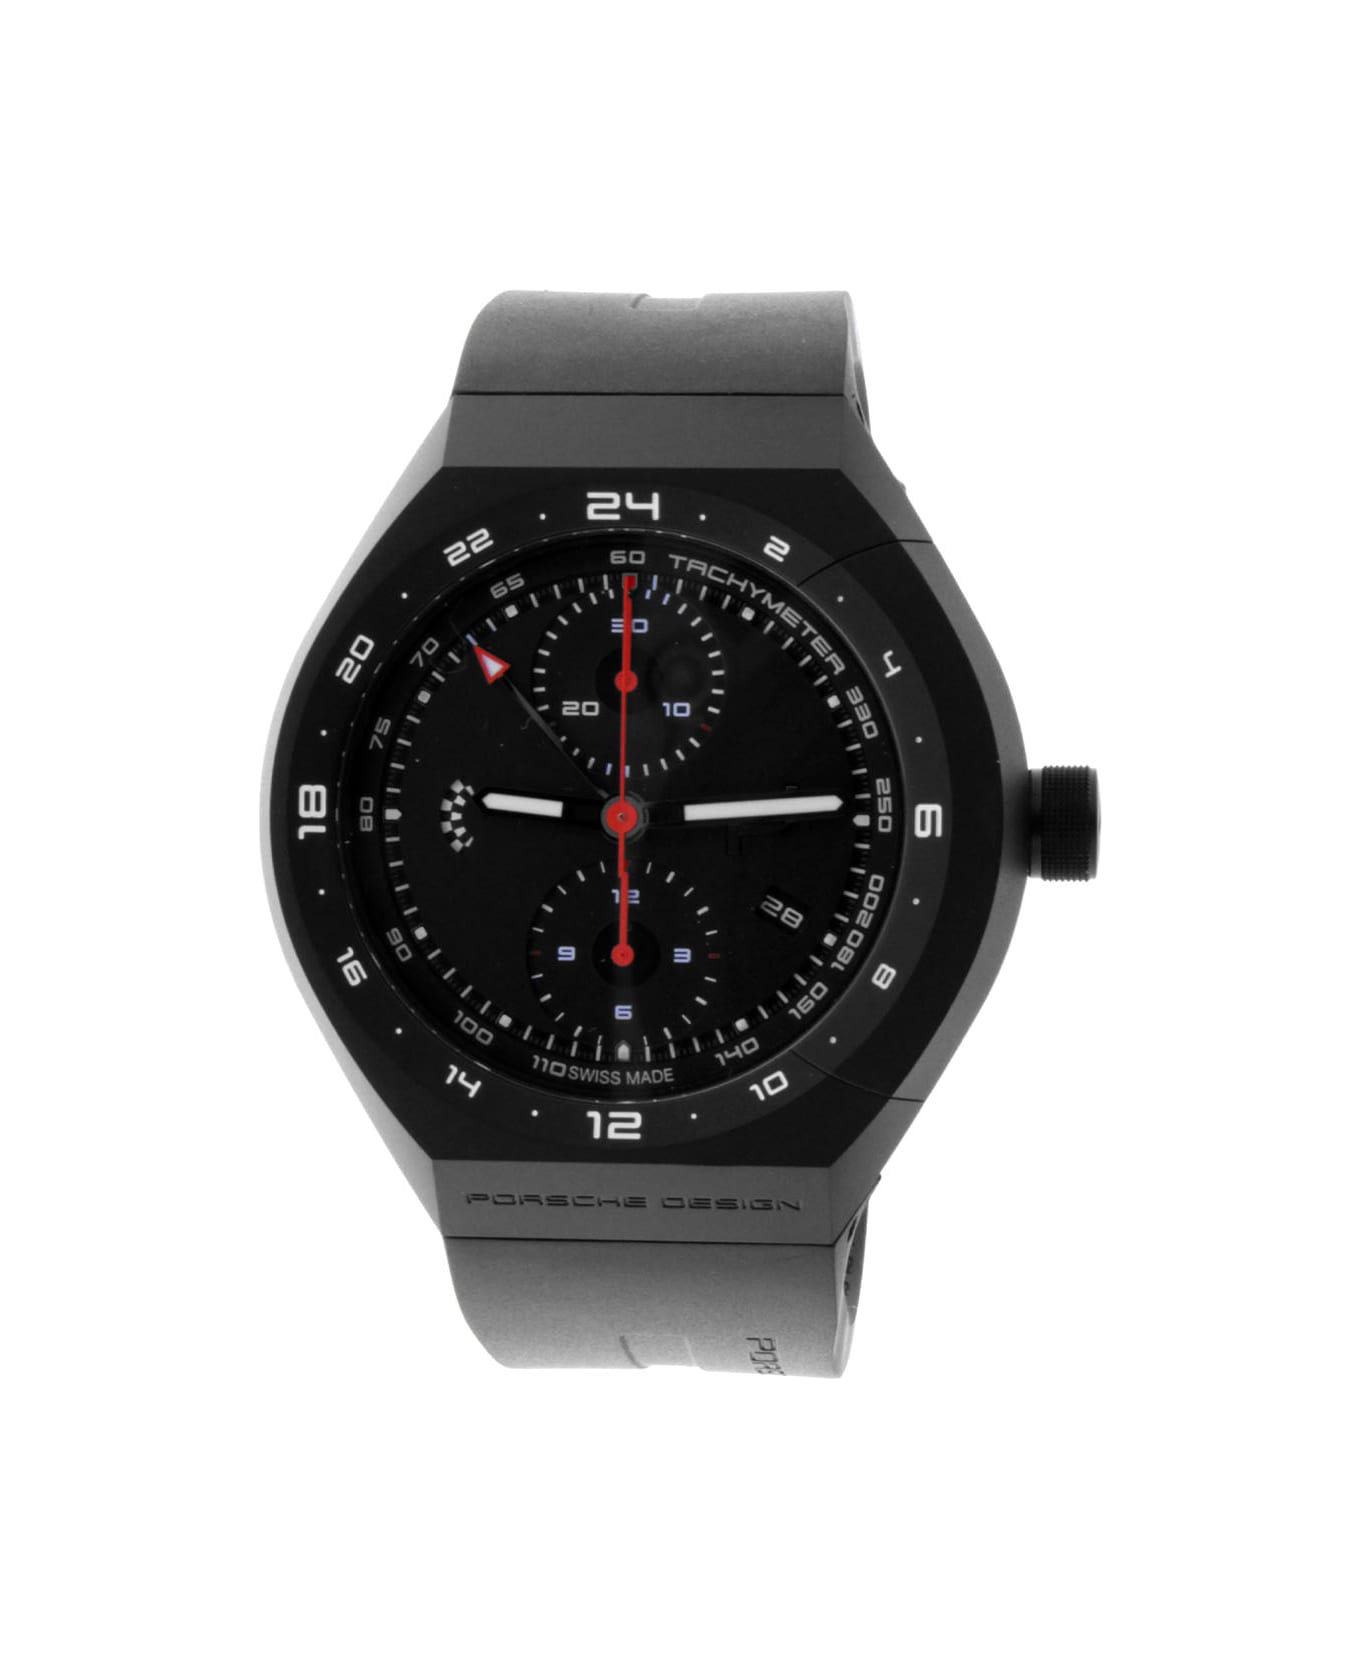 Porsche Design 6030.6.01.007.05.2 Watches